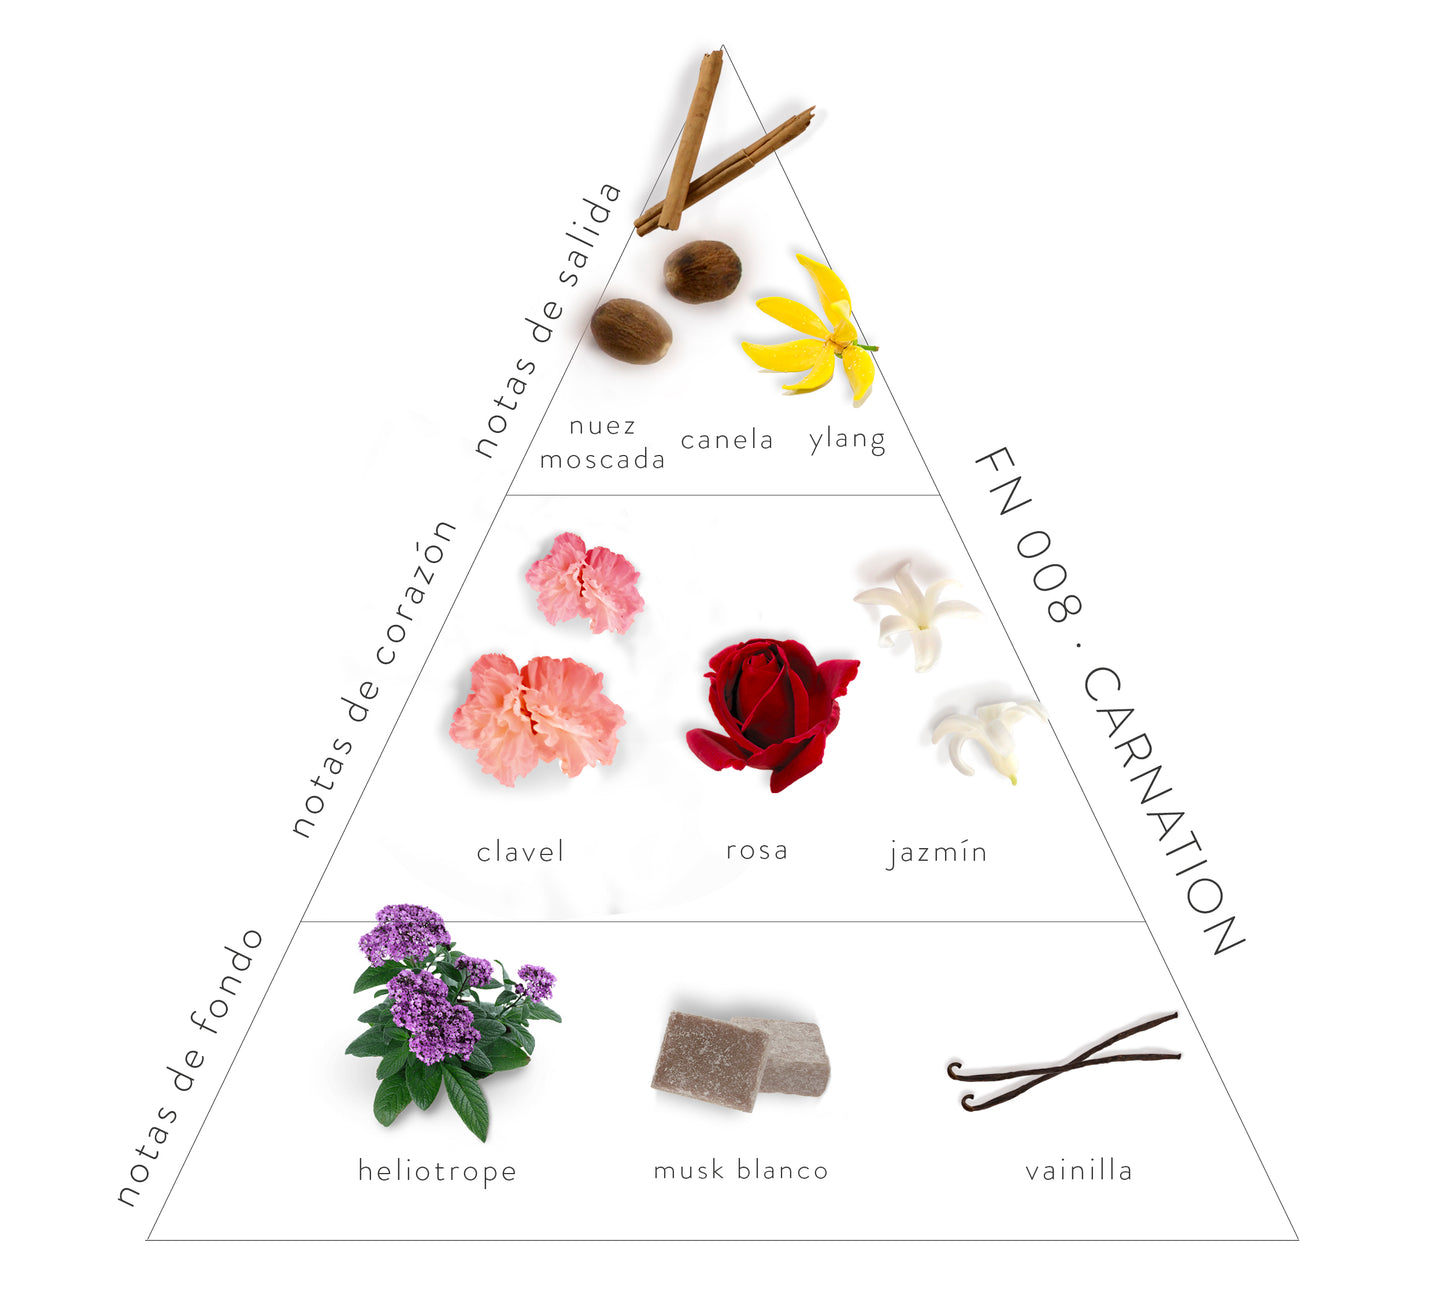 Pirámide Olfativa Carnation: Notas de salida: nuez moscada, canela y ylang. Notas de corazón: clavel, rosa, jazmín. Notas de fondo: heliotrope, musk blanco y vainilla.